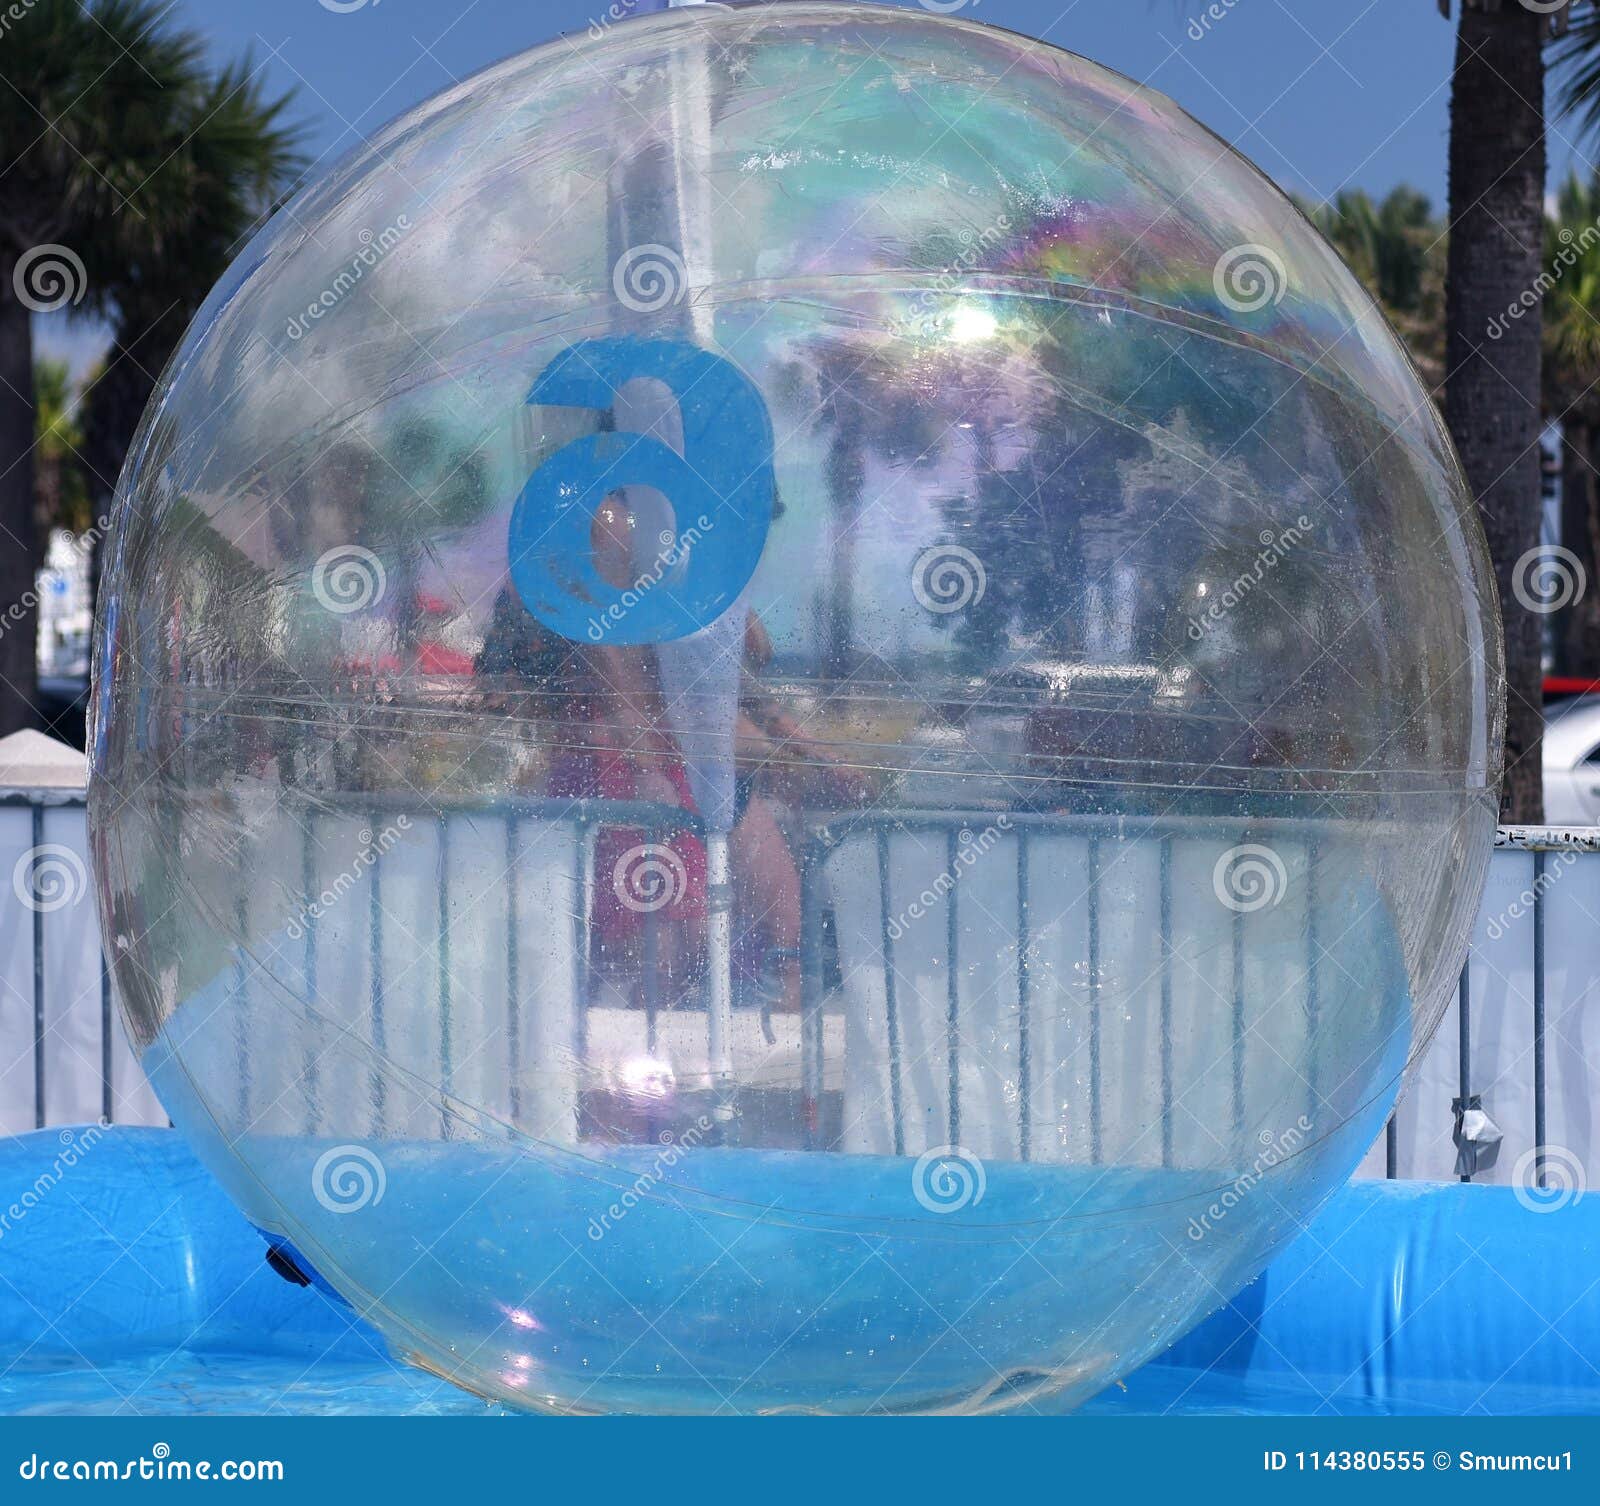 Bola de Burbujas de Agua Inflable súper Grande Niños Globo Grande Lleno de Aire/Agua Suave para niños Adultos Fiesta de Verano y Juguete de Juego de Agua hook.s Bolas de Burbujas Gigantes